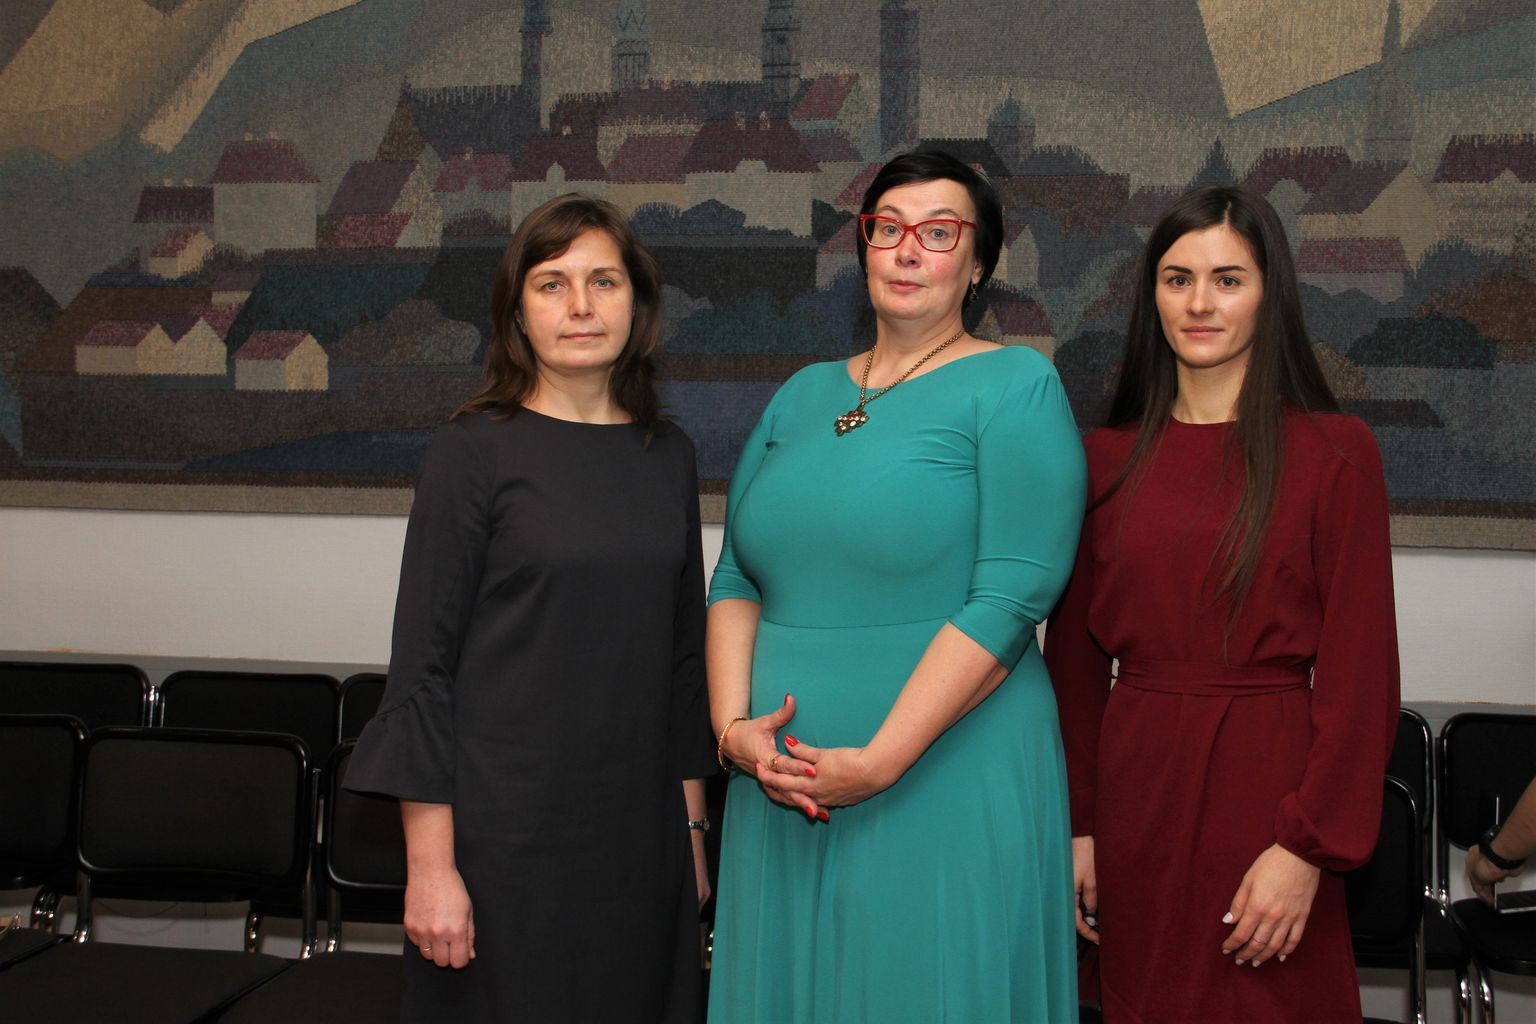 Городская управа Нарвы, утвержденная 23 декабря 2021 года: Елена Голубева, Катри Райк и Ирина Смирнова.